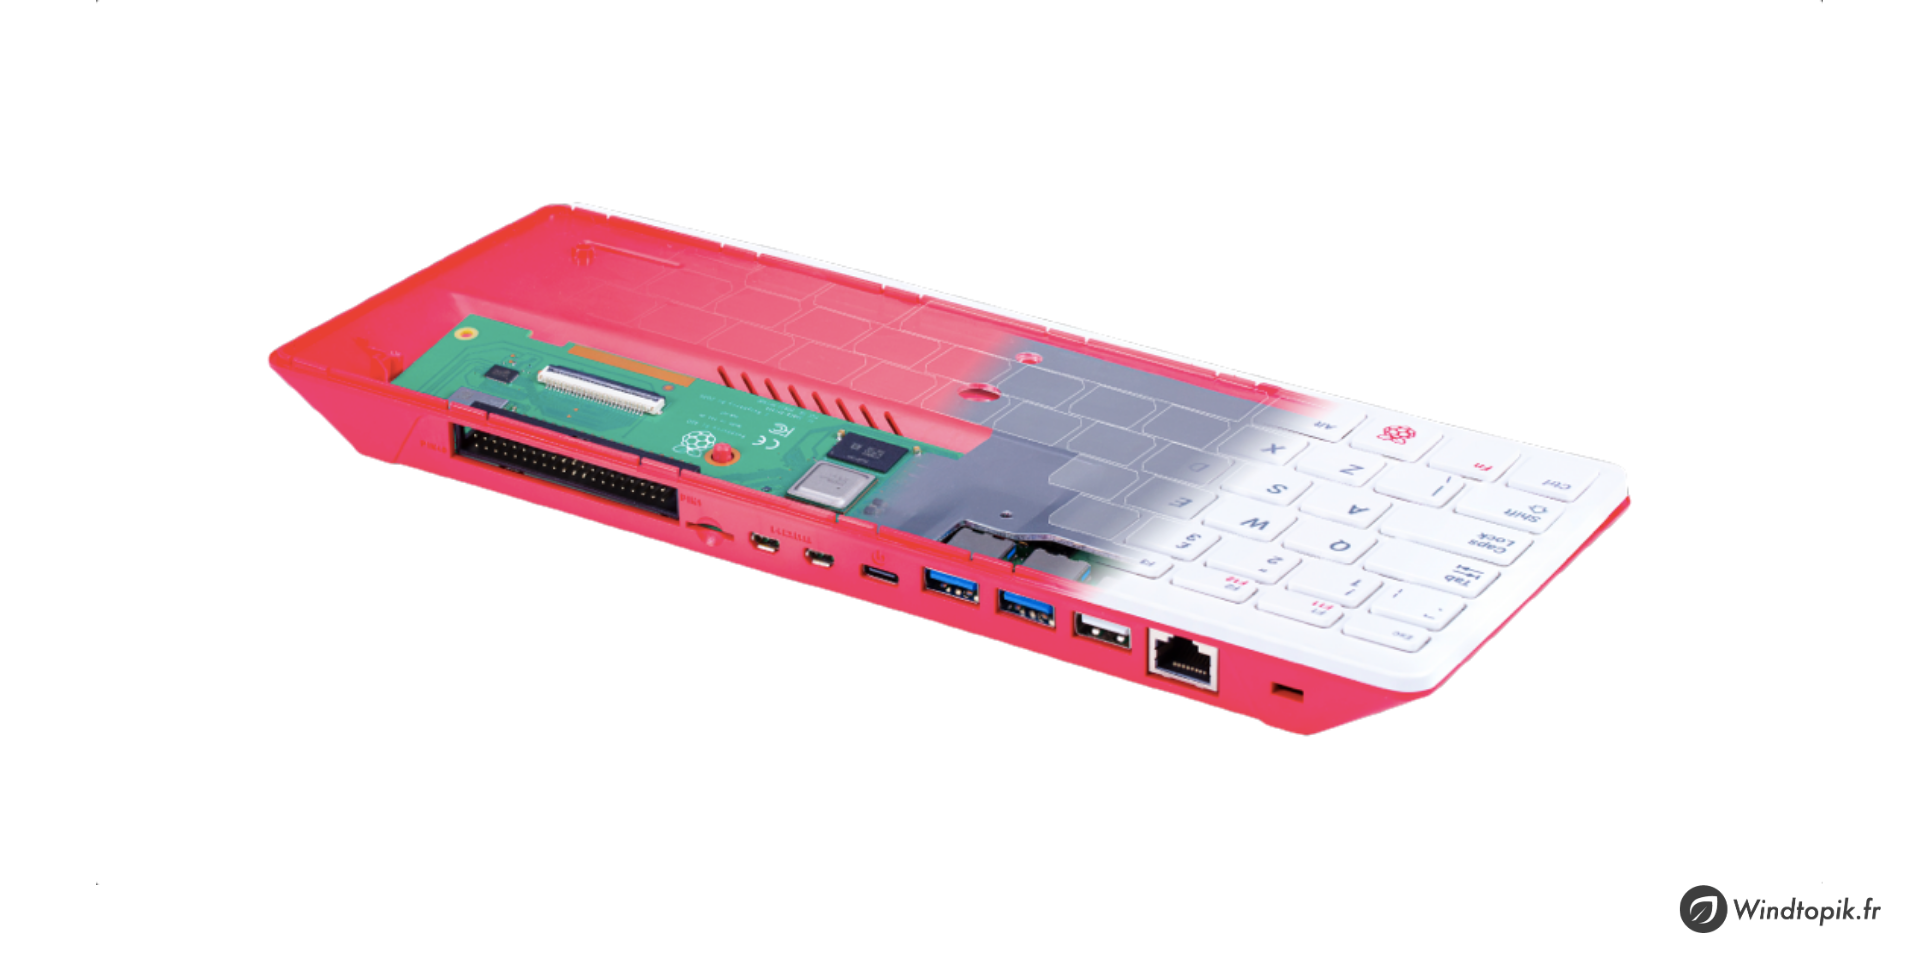 RPi 400 : Un Raspberry-Pi intégré dans un clavier !